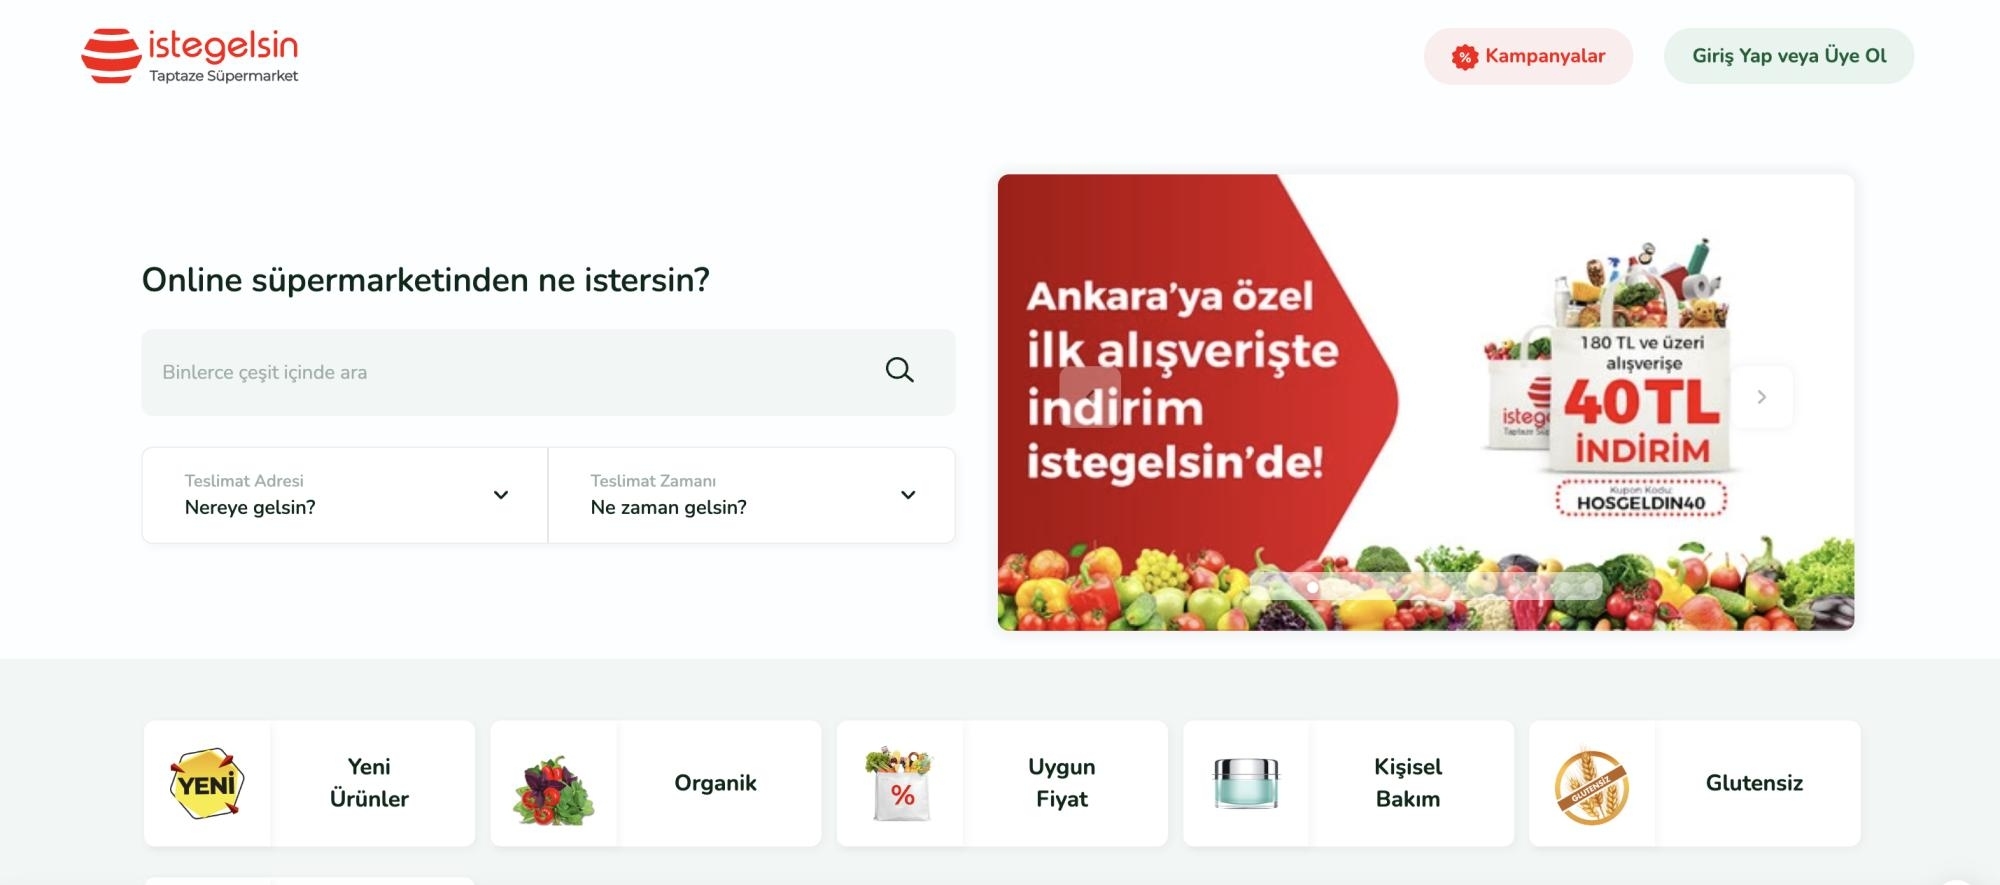 تطبيق "İste Gelsin" افتتح عام 2019